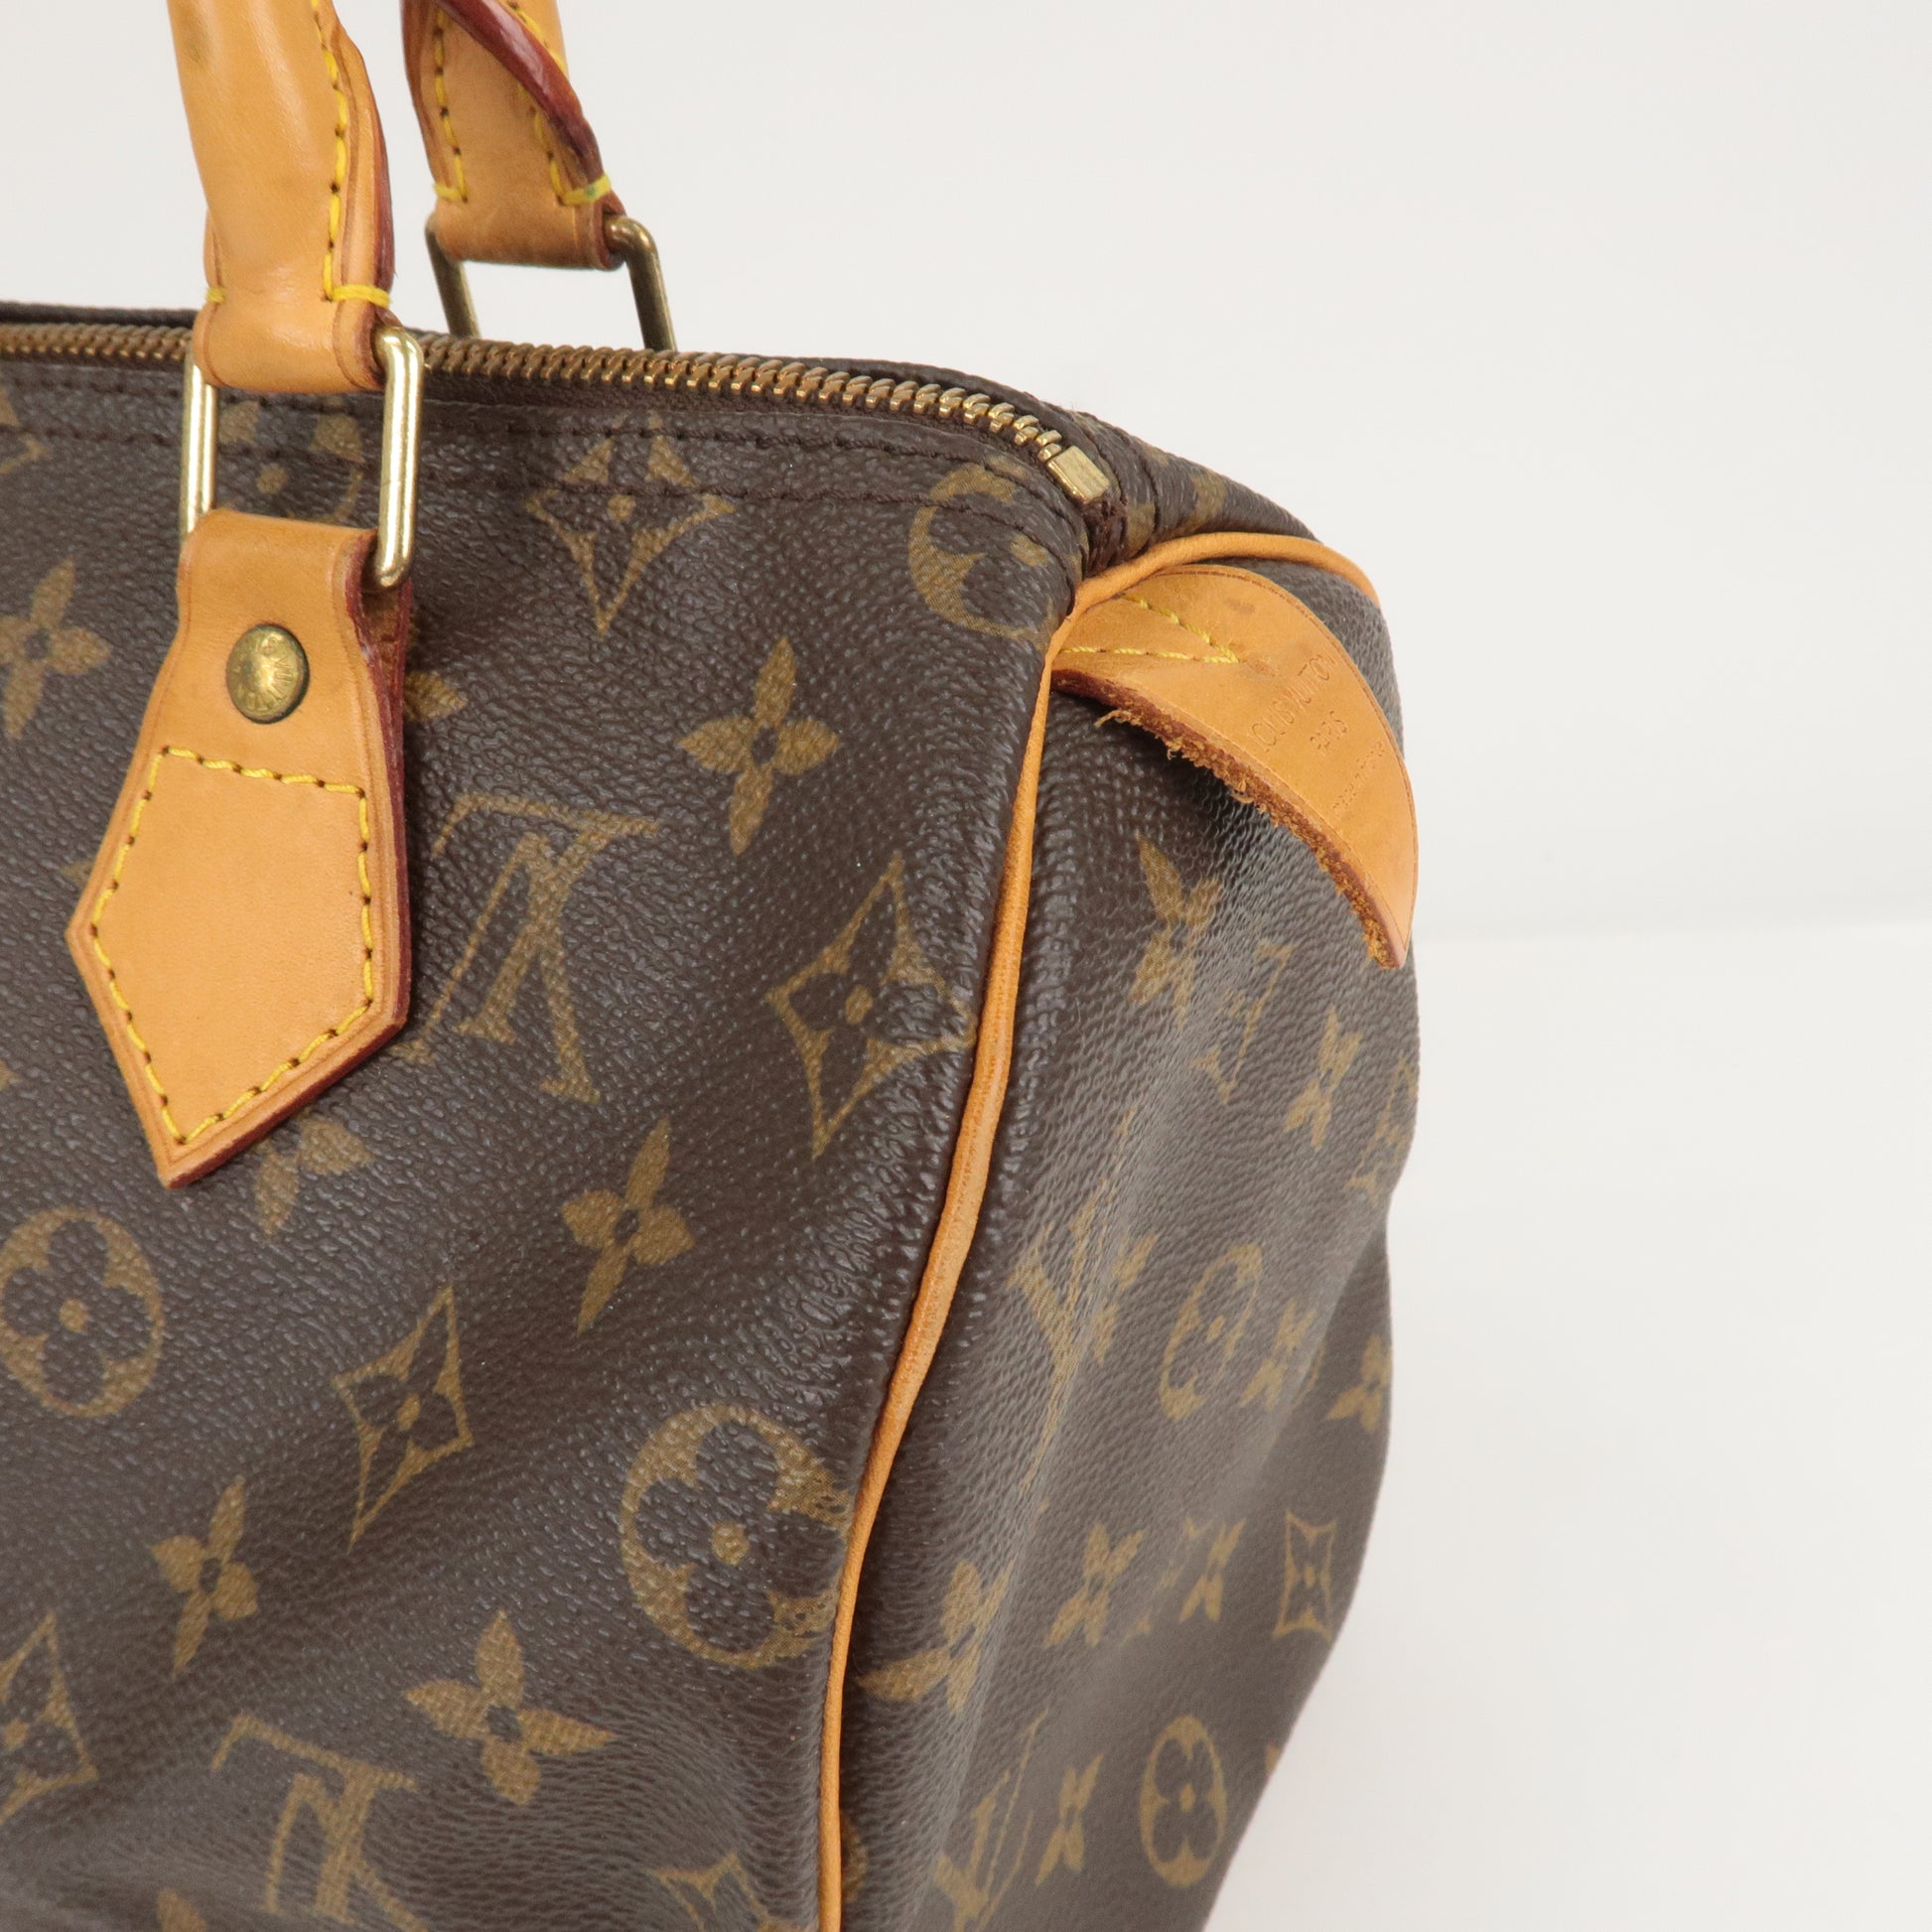 Louis Vuitton Monogram Speedy 25 Boston Bag